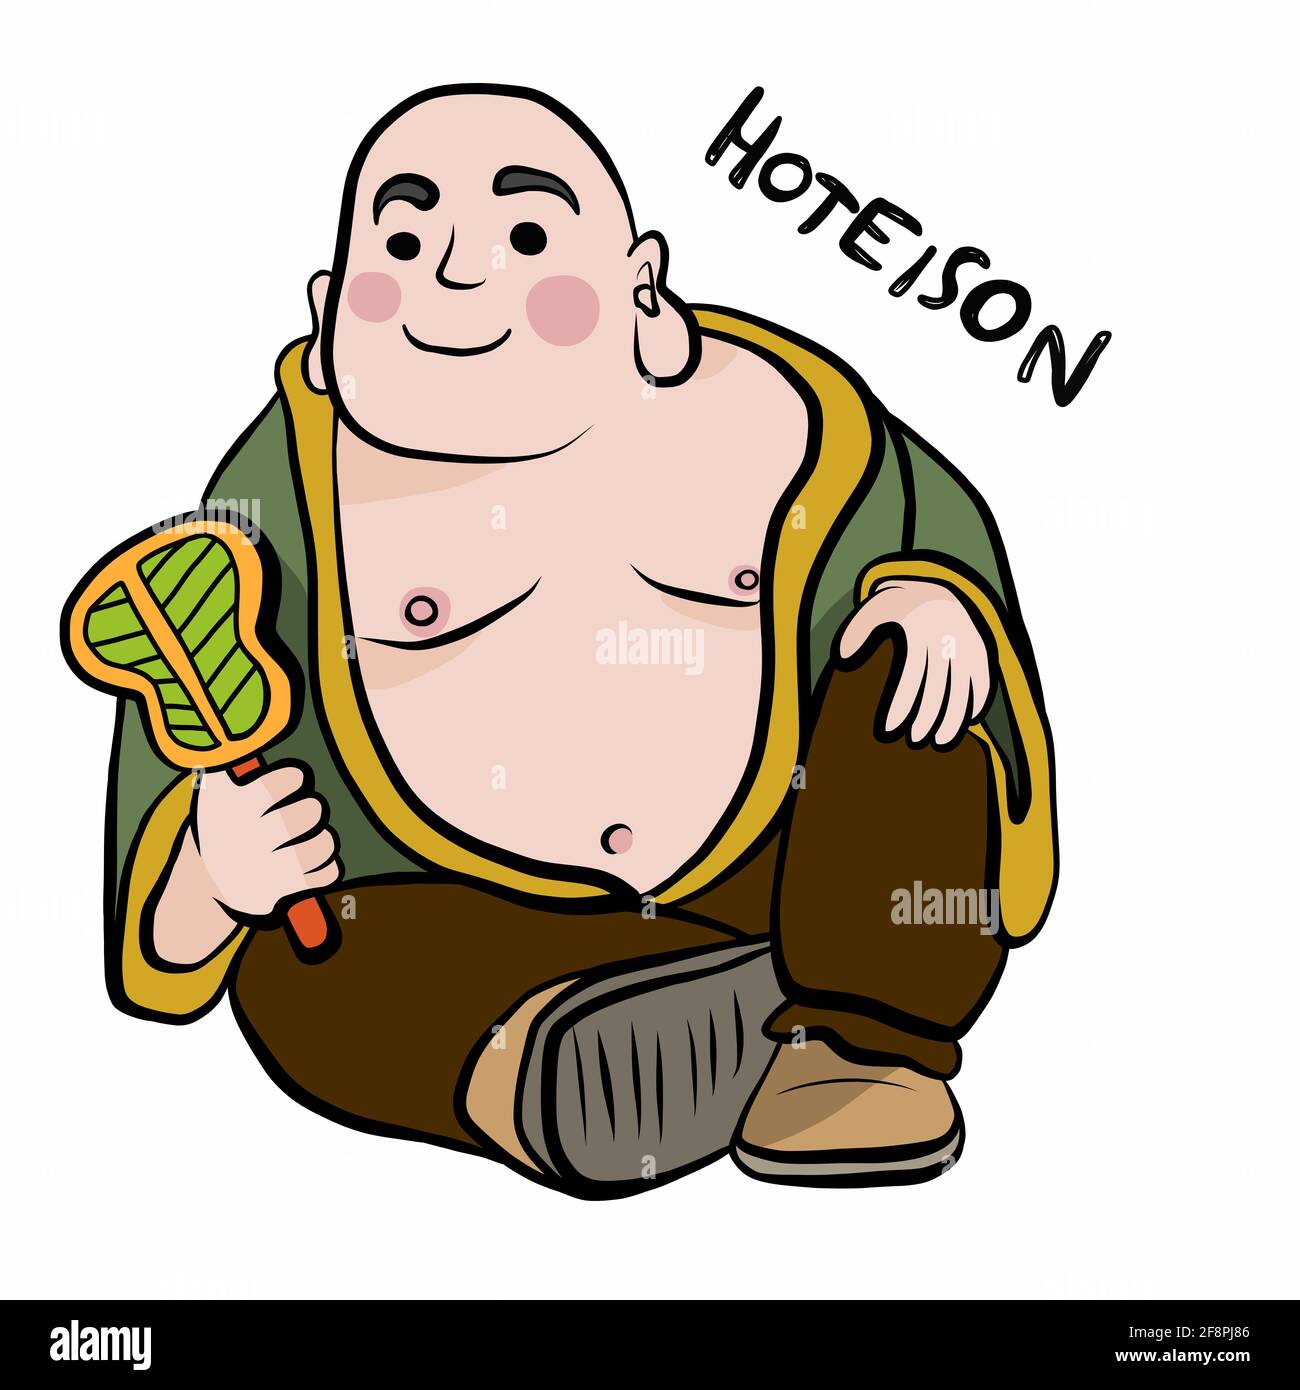 Japanische gott Namen Hoteison Cartoon Vektor Illustration Stock Vektor